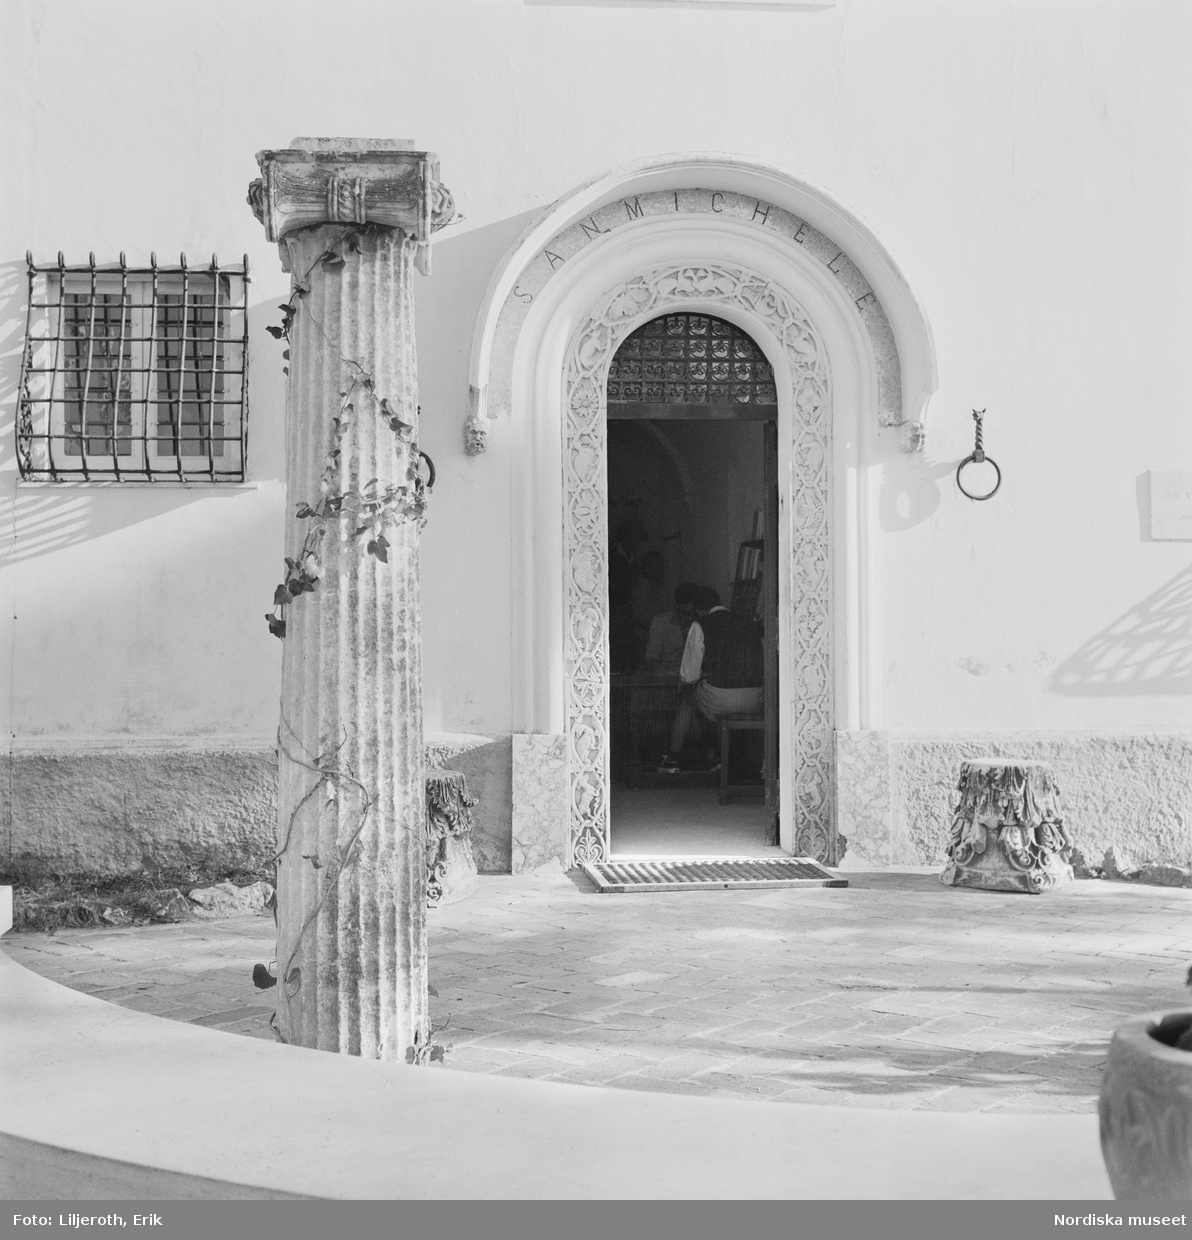 Porten till Axel Munthes villa San Michele. Till vänster en kolonn omslingrad av murgröna.